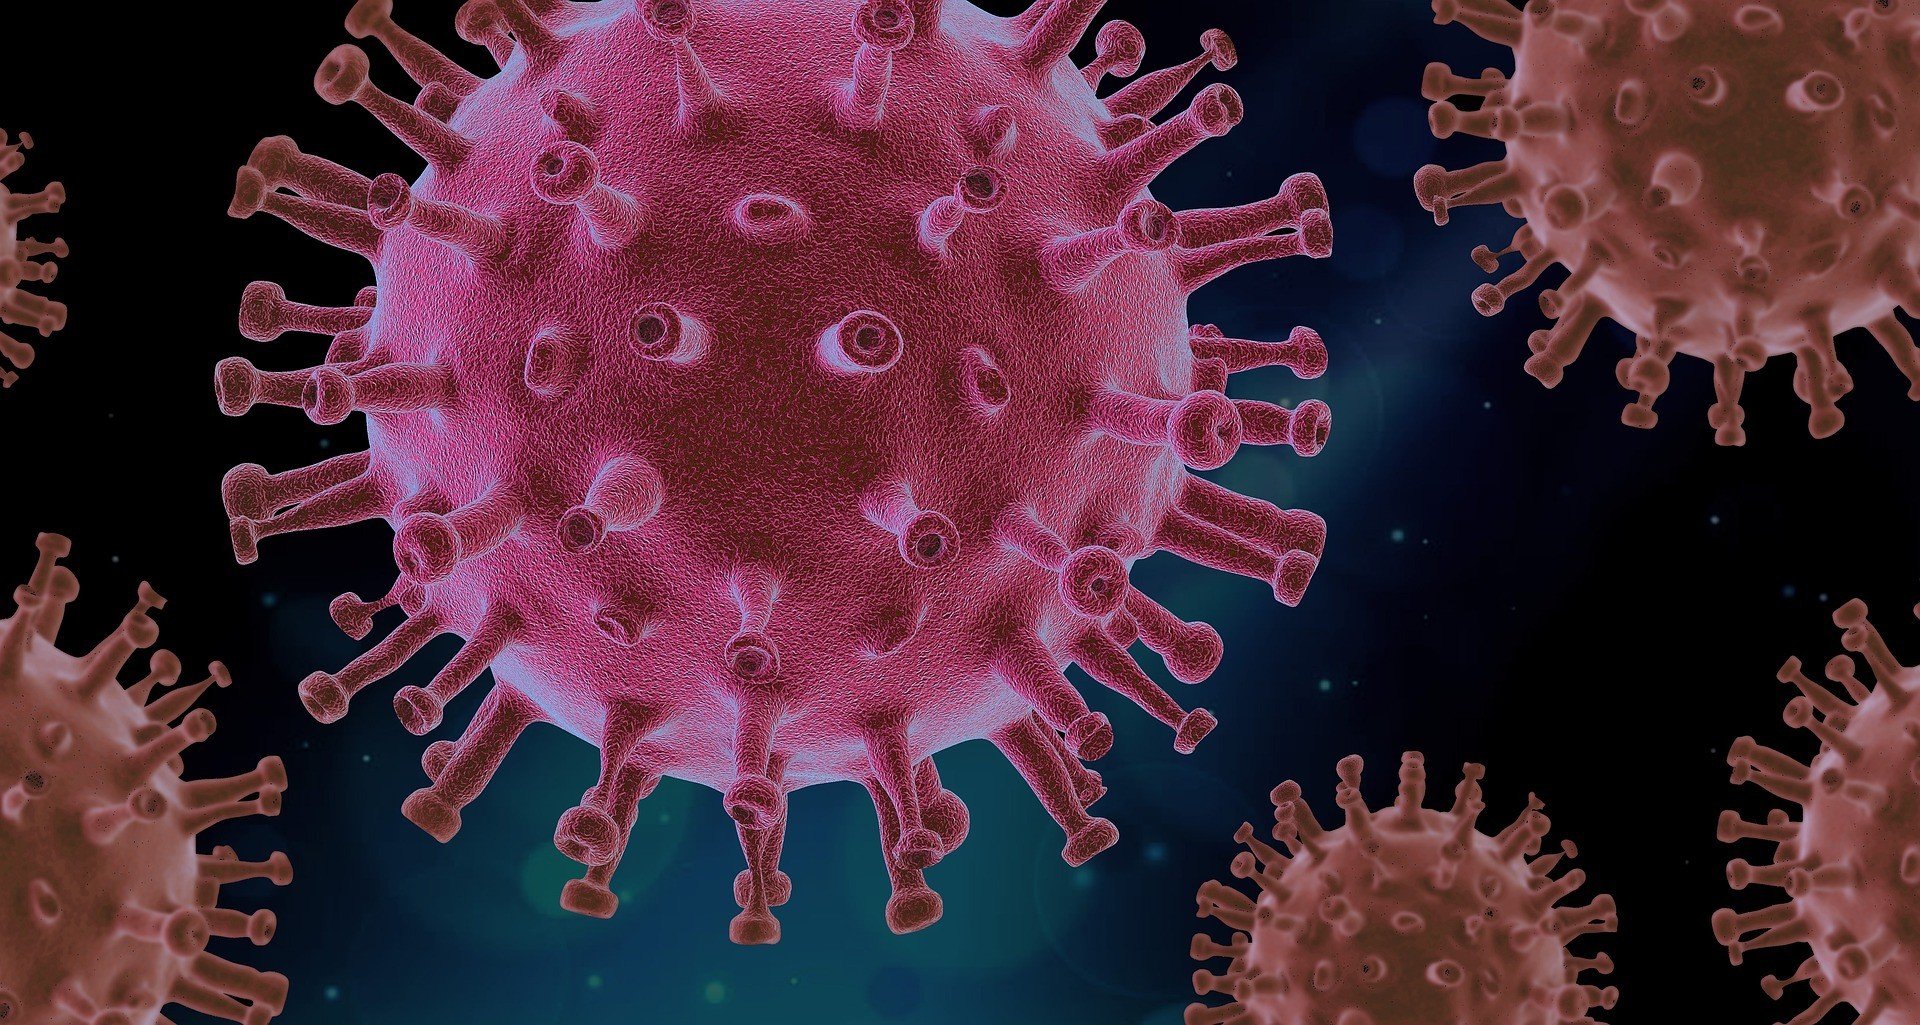 Коронавирус снижает мужское либидо - исследование